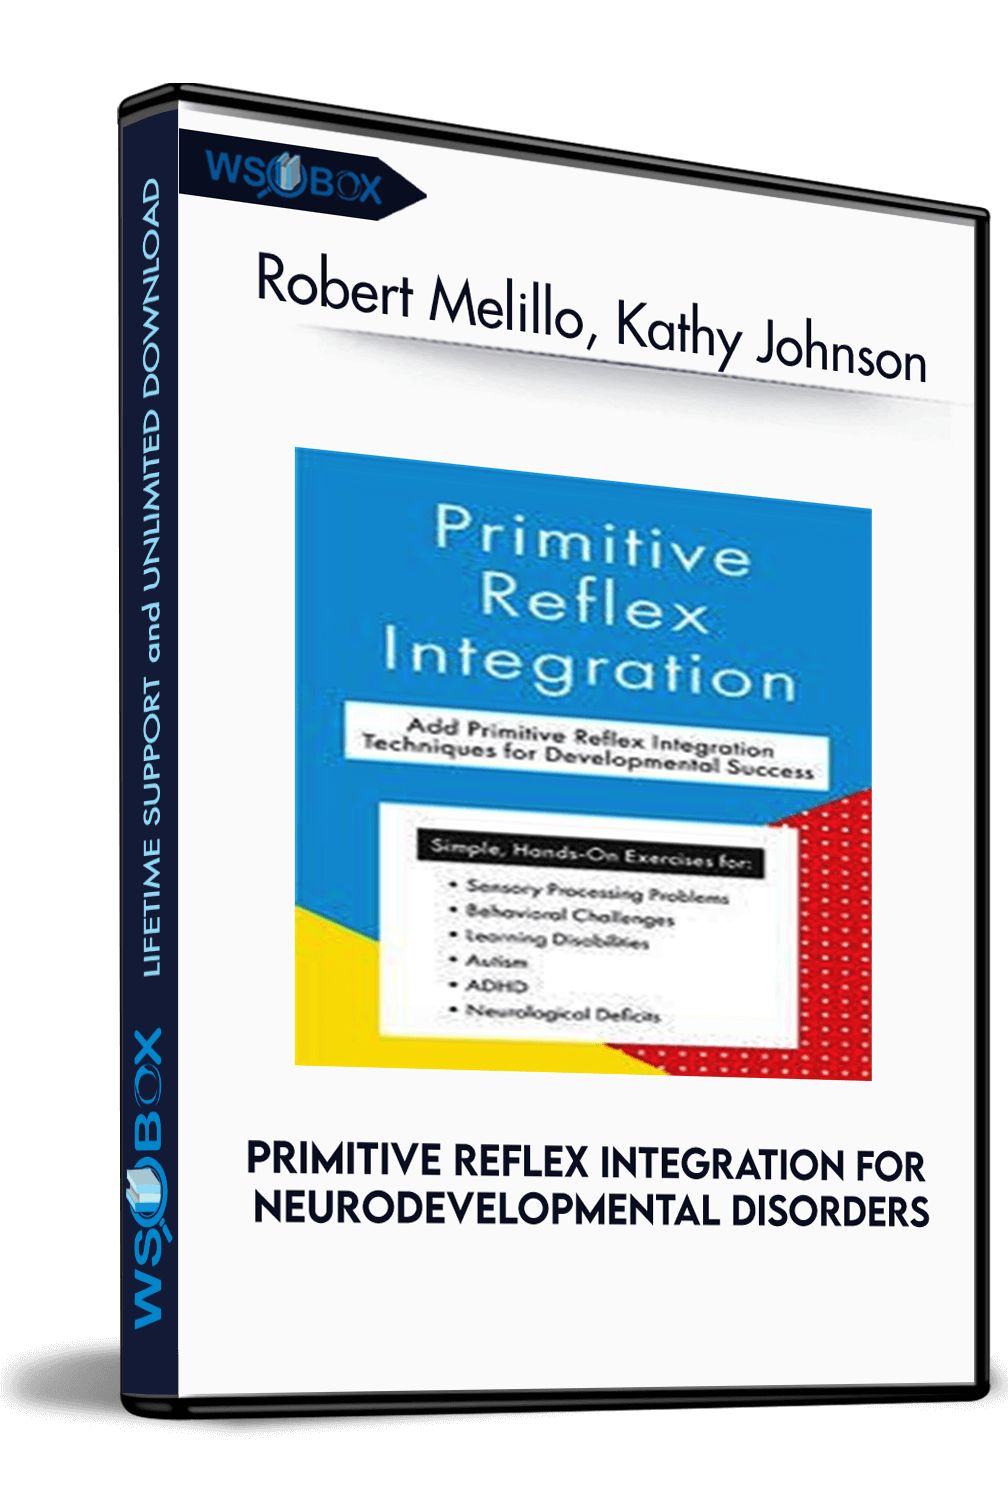 primitive-reflex-integration-for-neurodevelopmental-disorders-robert-melillo-kathy-johnson